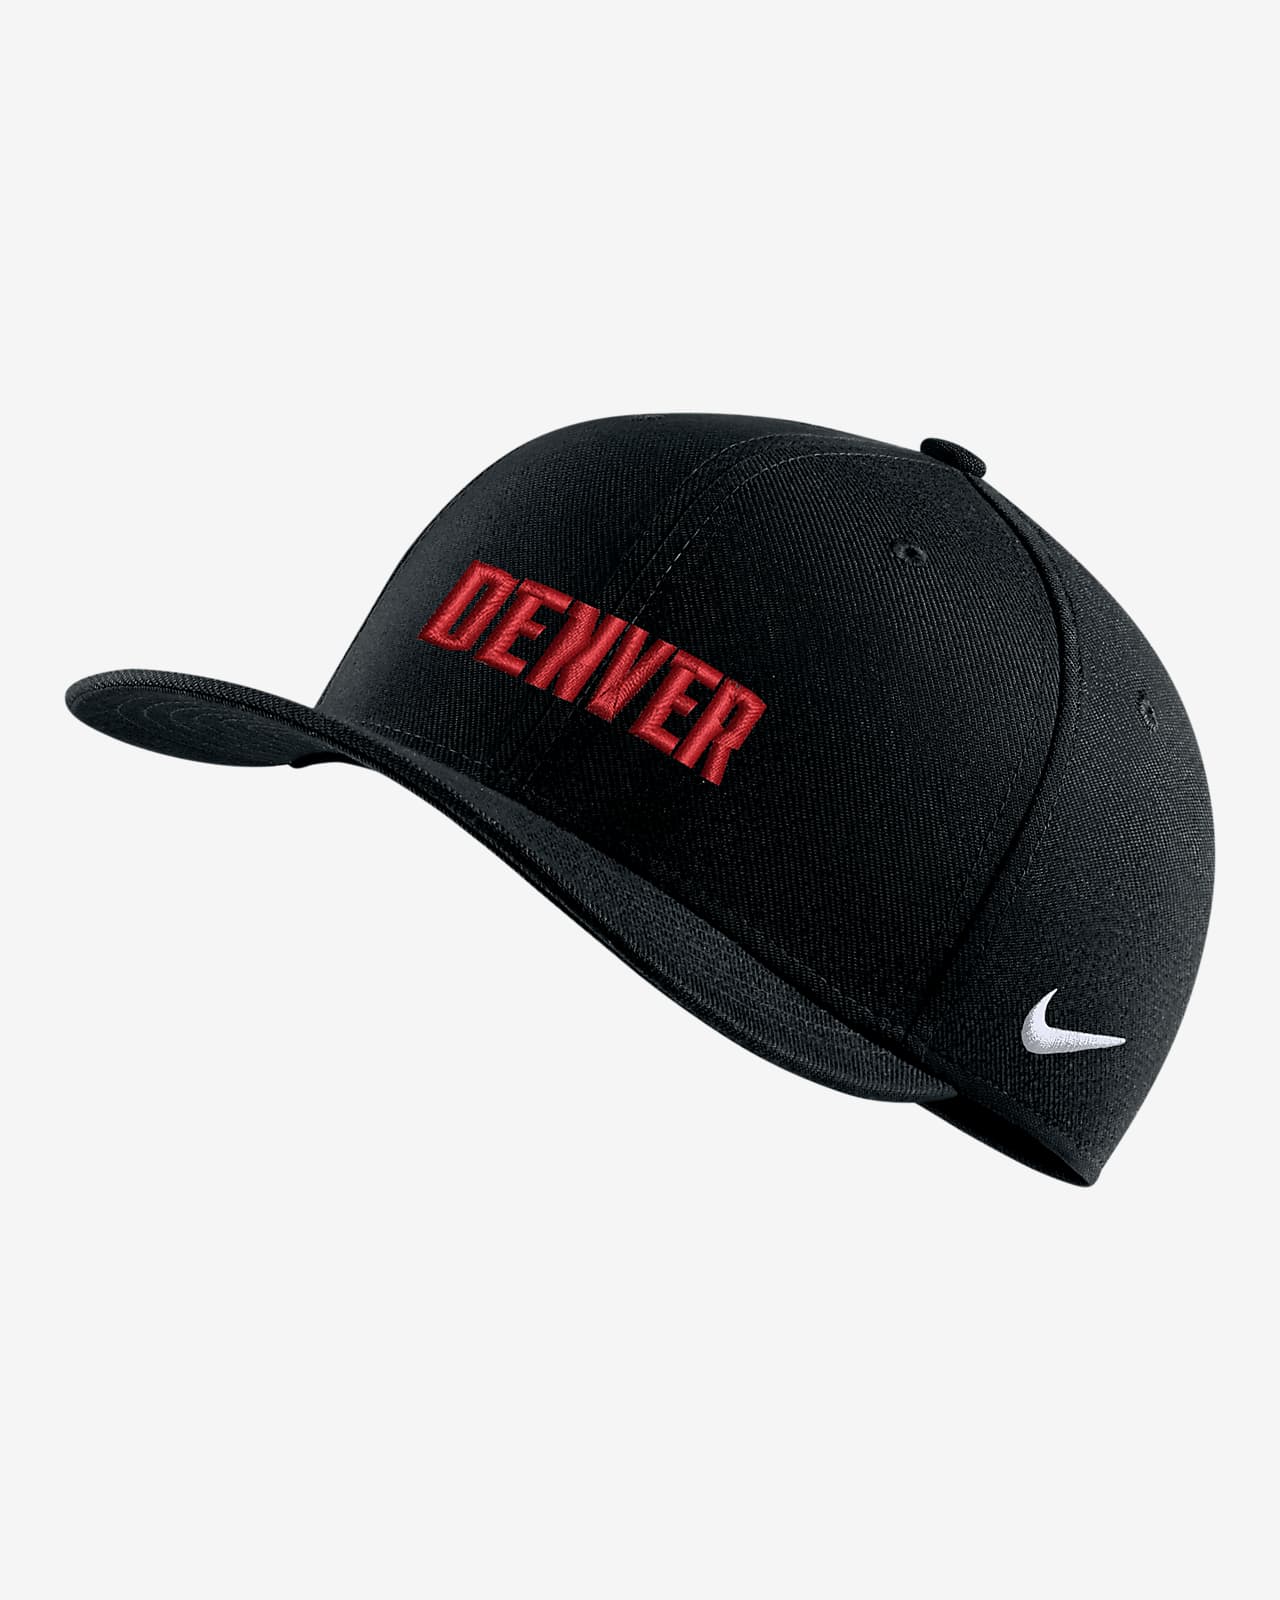 Denver Nuggets City Edition Nike NBA Swoosh Flex Cap